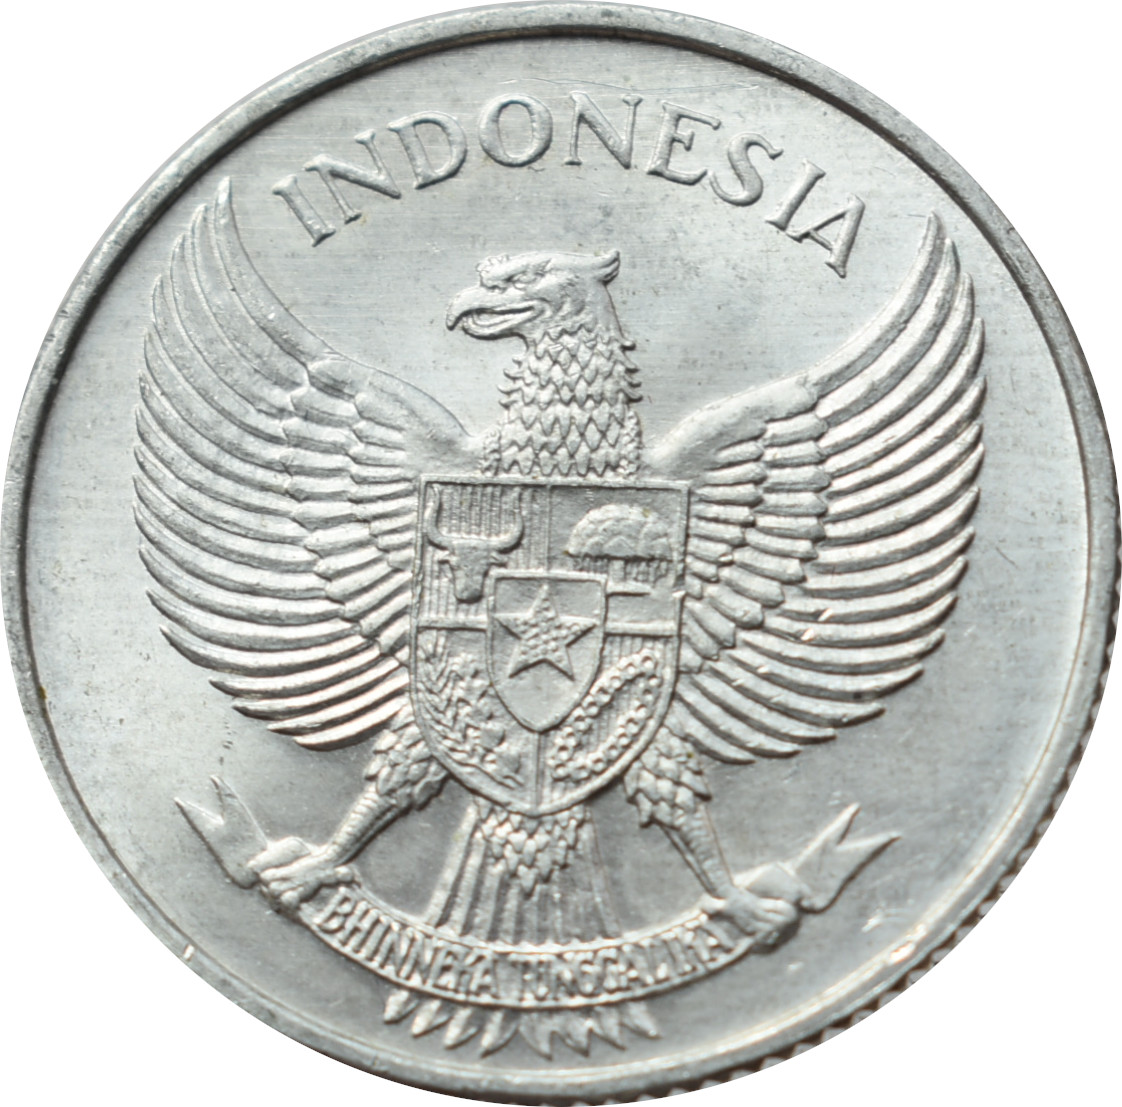 Indonézia 25 Sen 1955